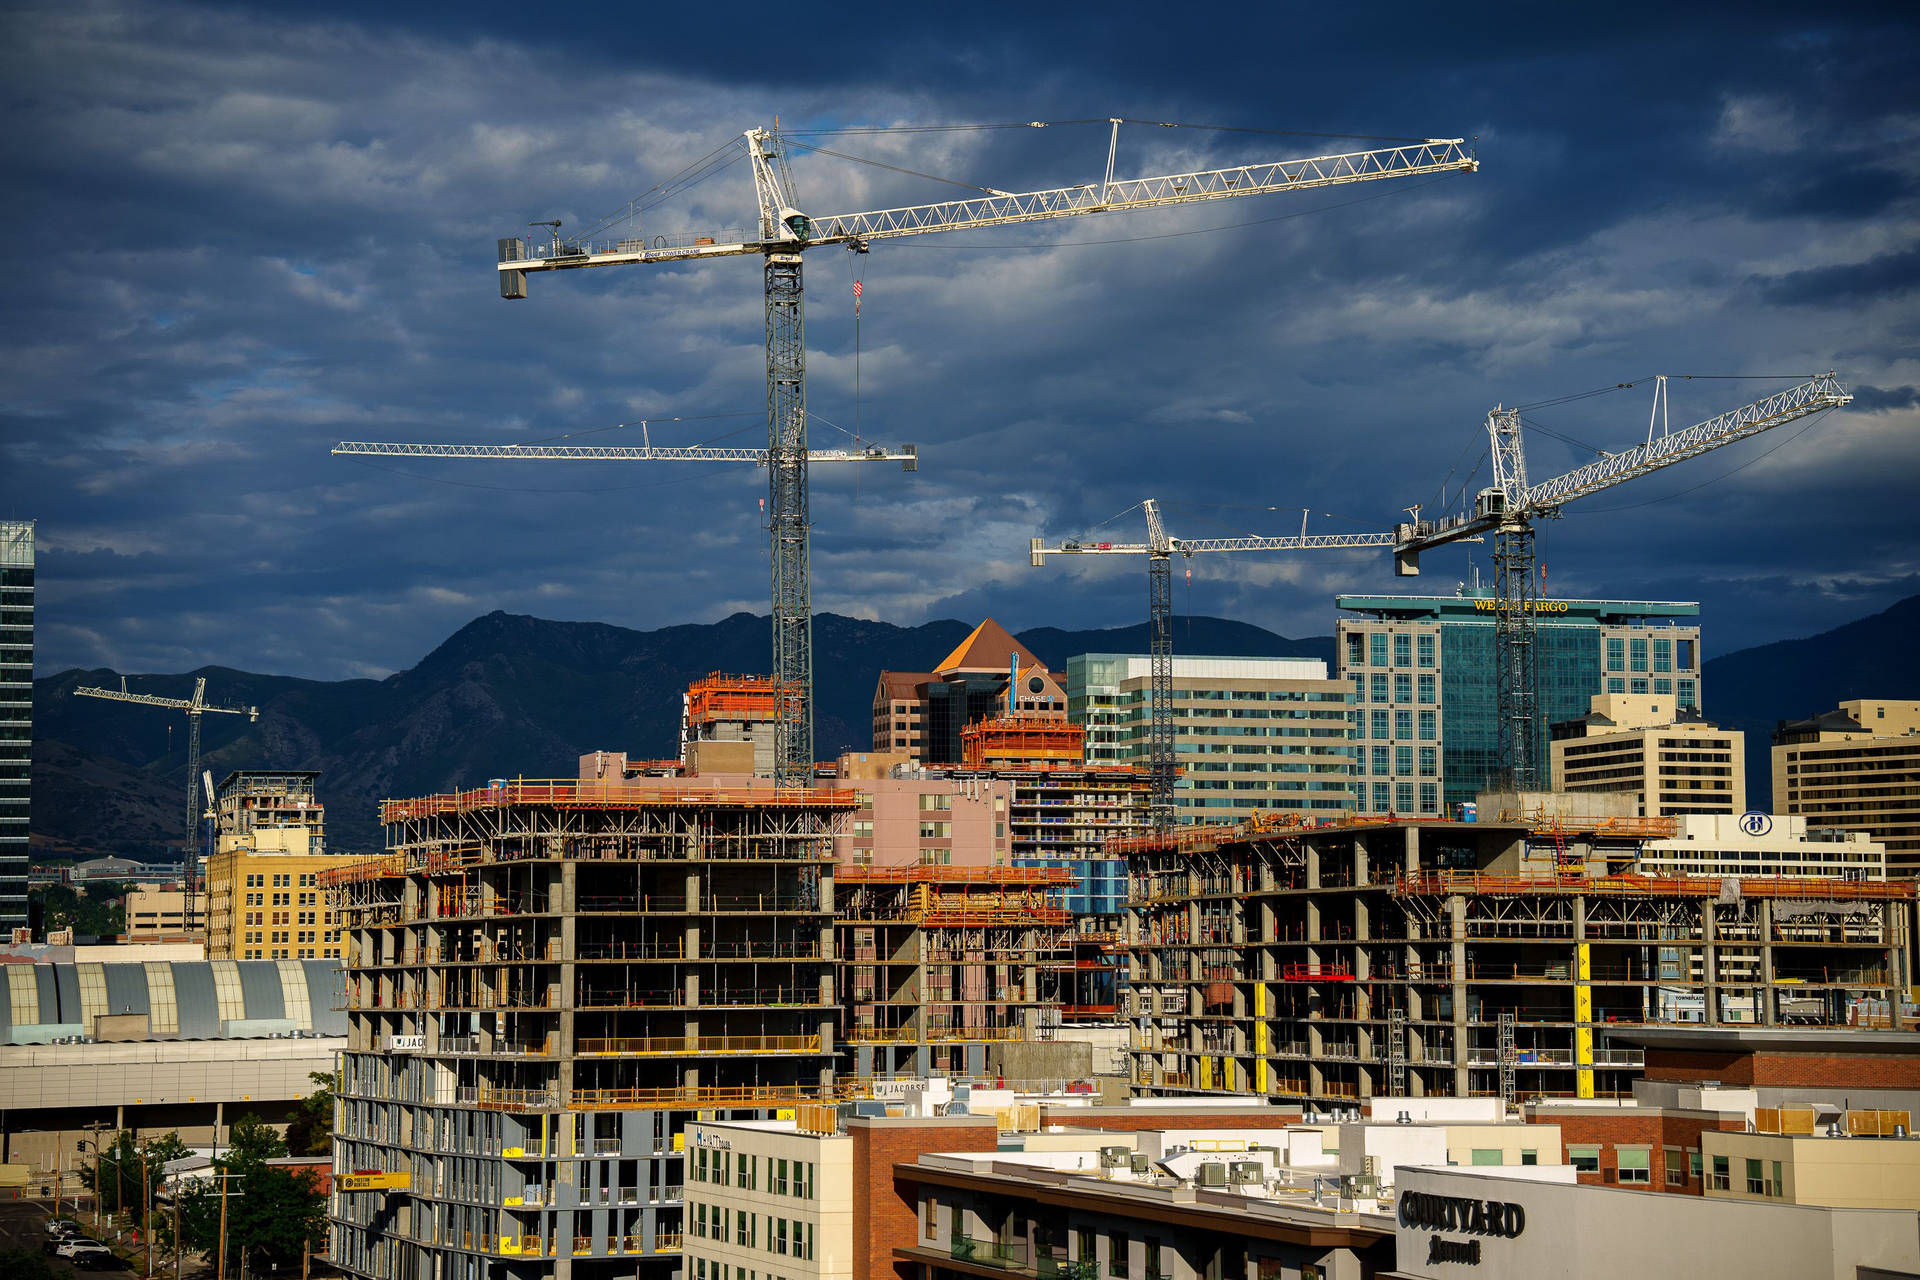 Salt Lake City Buildings Under Construction